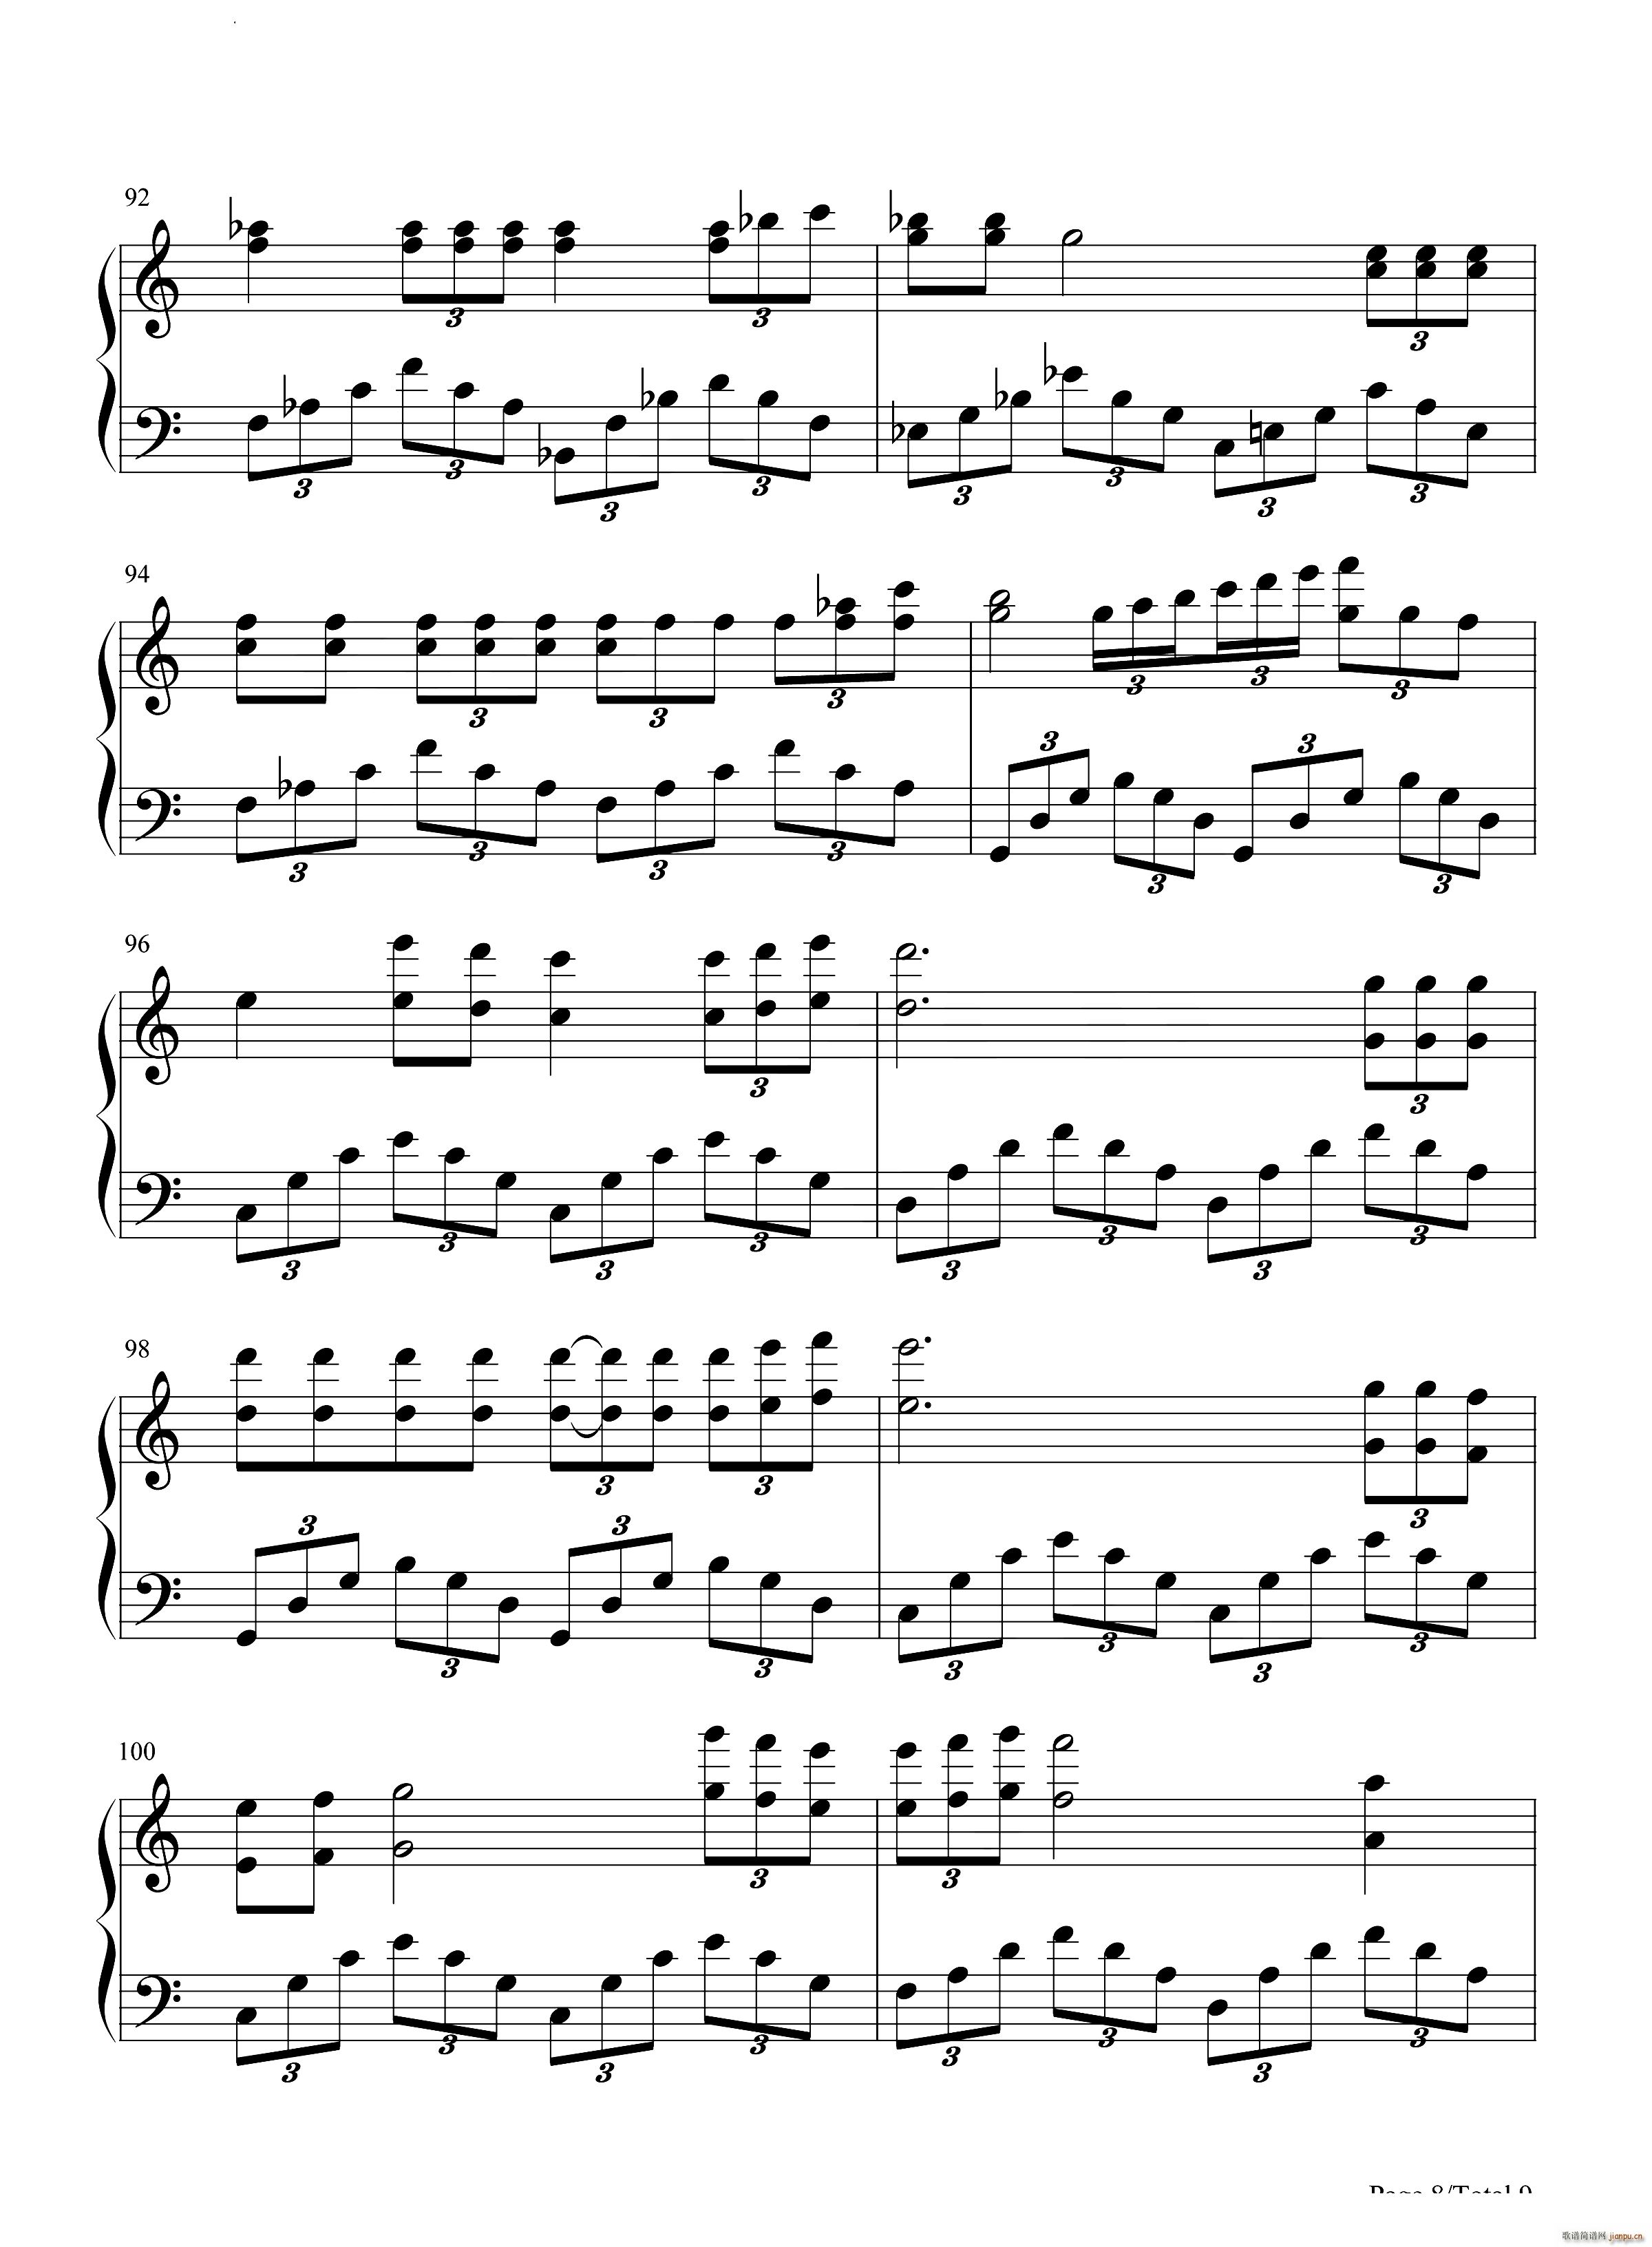 艾斯奥特曼钢琴串烧(钢琴谱)9